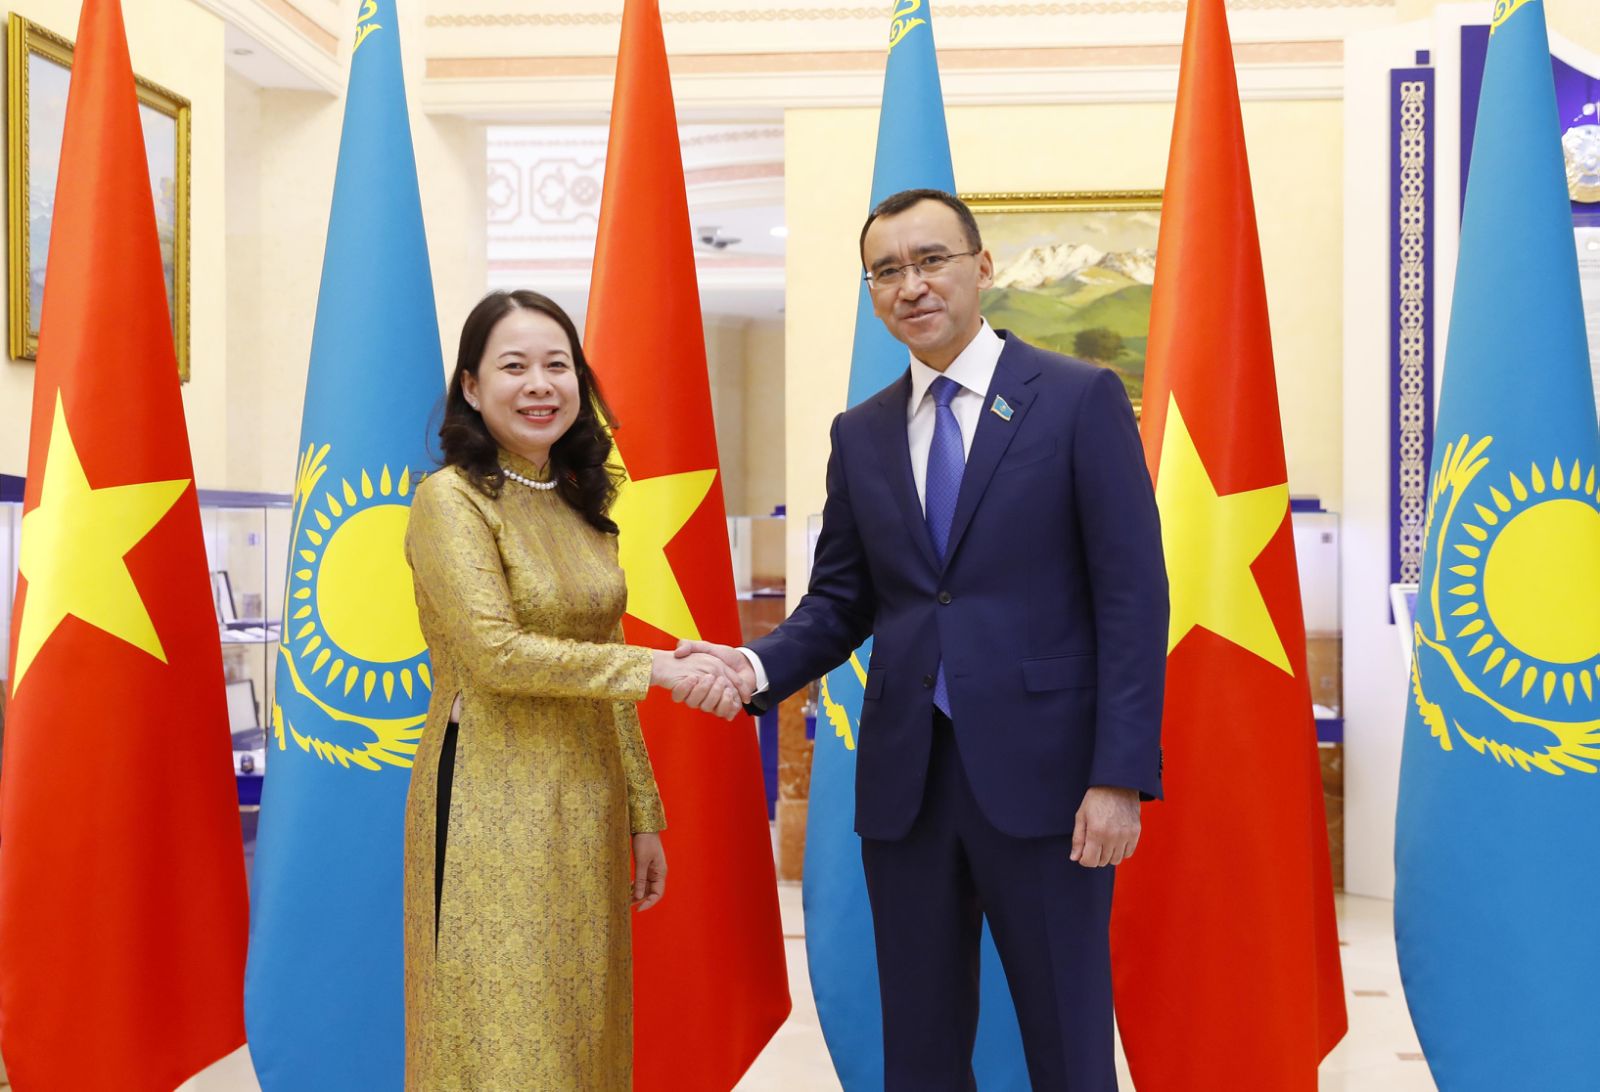 Mối quan hệ Việt Nam-Kazakhstan: Việt Nam và Kazakhstan đã thiết lập mối quan hệ đối tác chiến lược vững chắc với nhau. Những năm qua, hai nước không ngừng tăng cường trao đổi thương mại, đầu tư và hợp tác trong nhiều lĩnh vực, đóng góp tích cực cho sự phát triển của cả hai nước. Để hiểu rõ hơn về mối quan hệ này, hãy cùng xem hình ảnh liên quan đến từ khóa này.